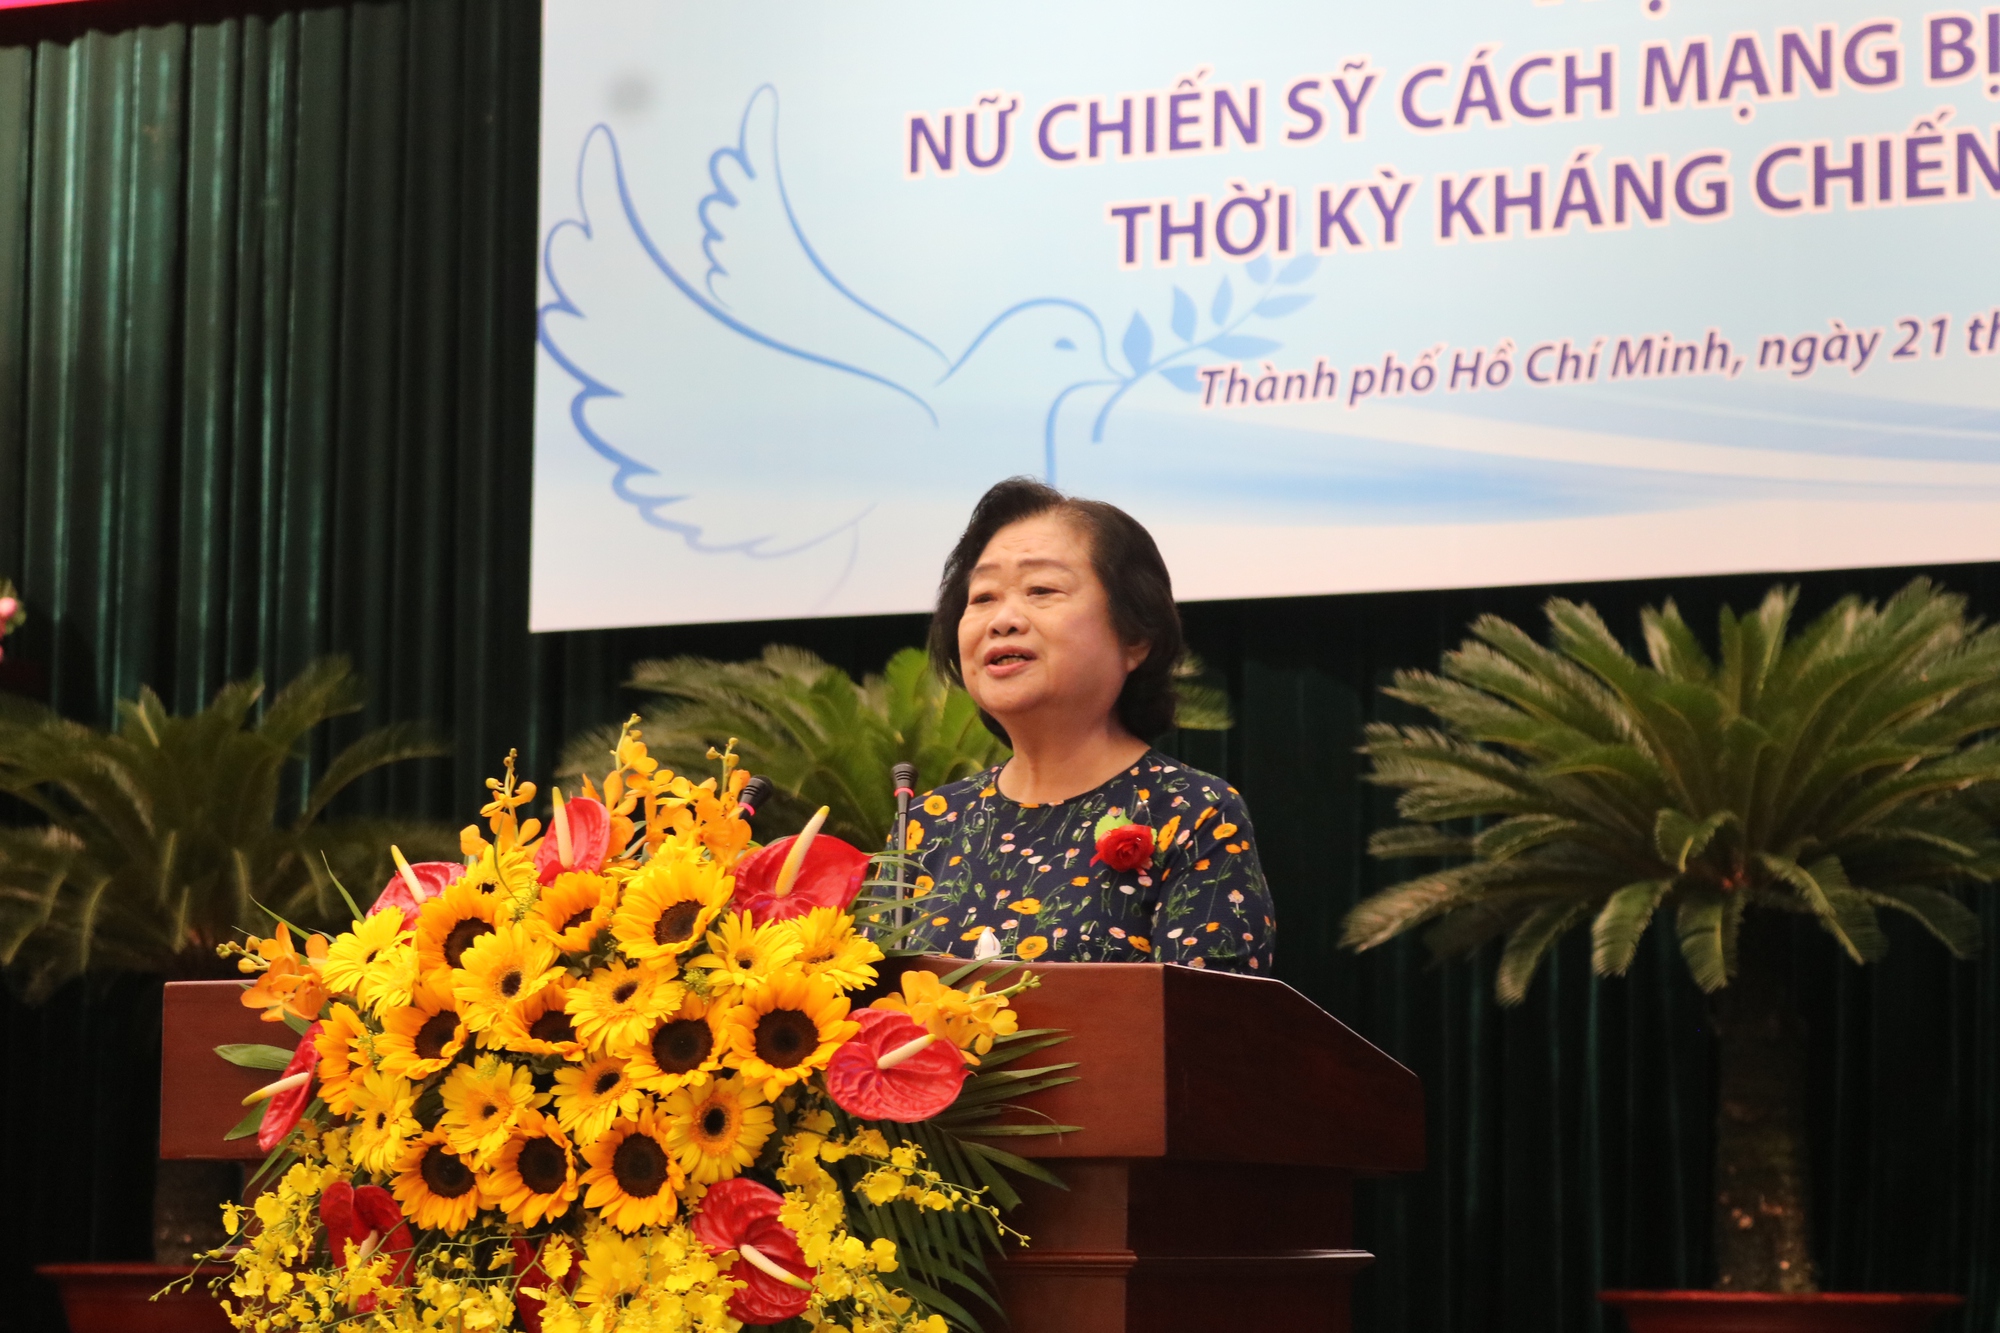 Chủ tịch Hội Liên hiệp Phụ nữ Việt Nam bật khóc trong buổi nhắc nhớ ký ức - Ảnh 6.